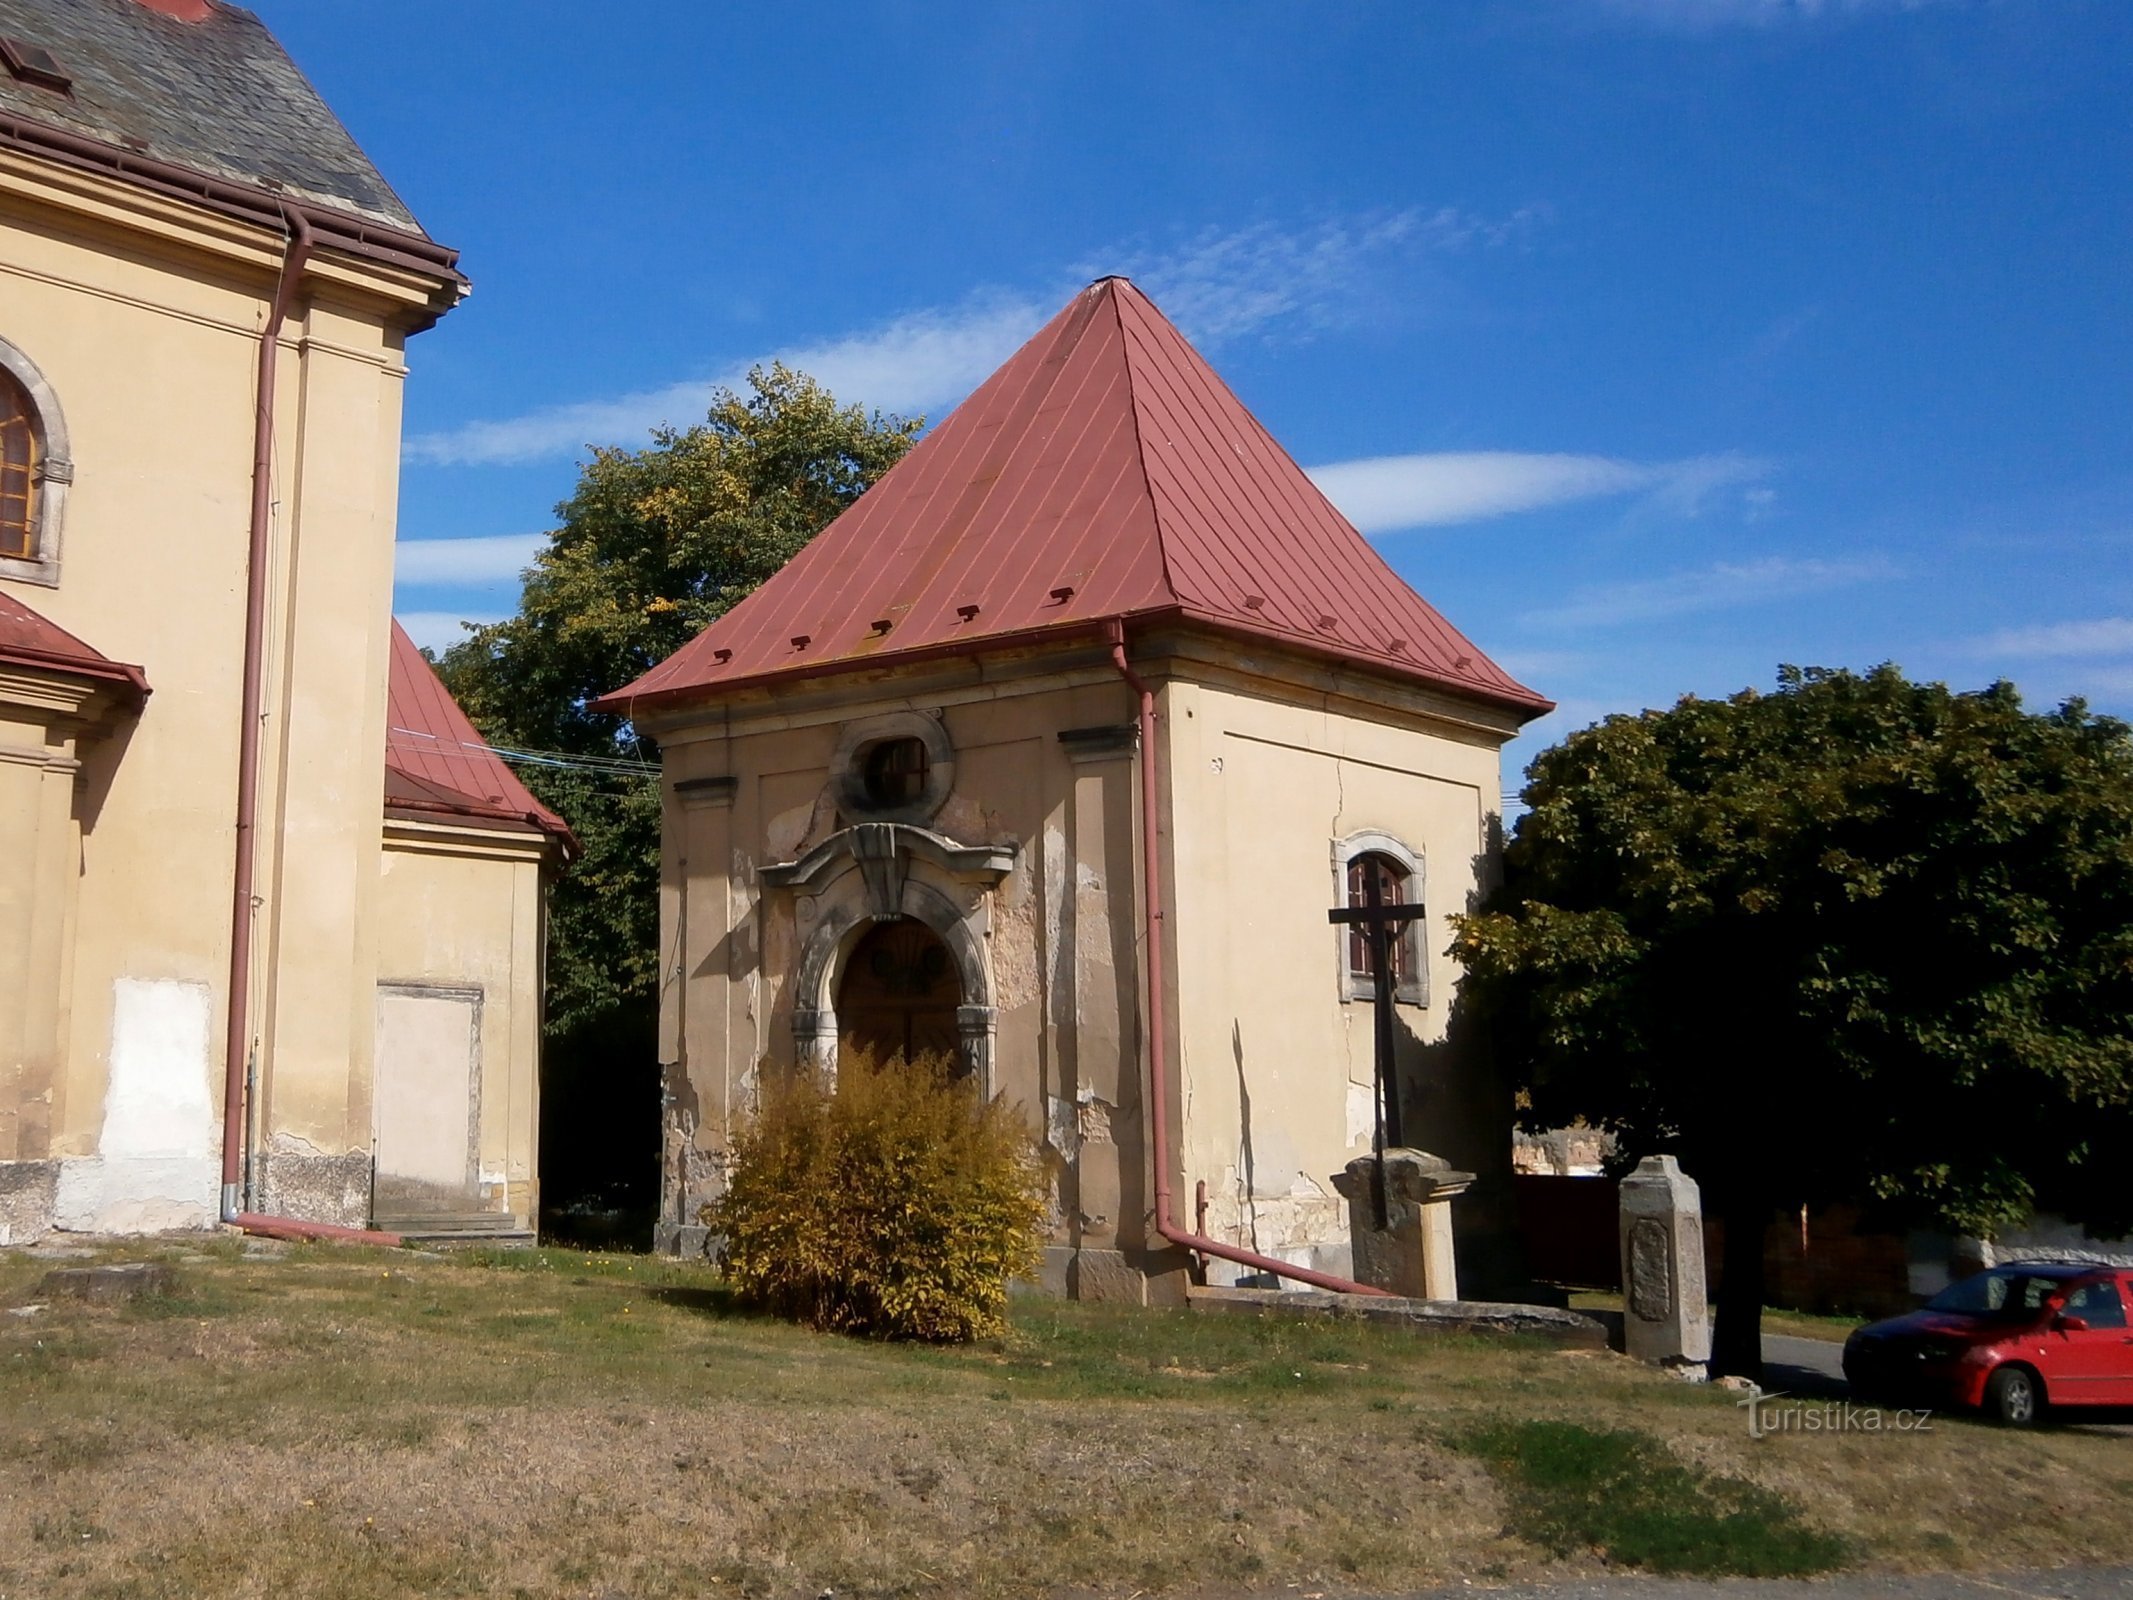 Kapela kod crkve sv. Jiljí, opat (Chvalkovice)